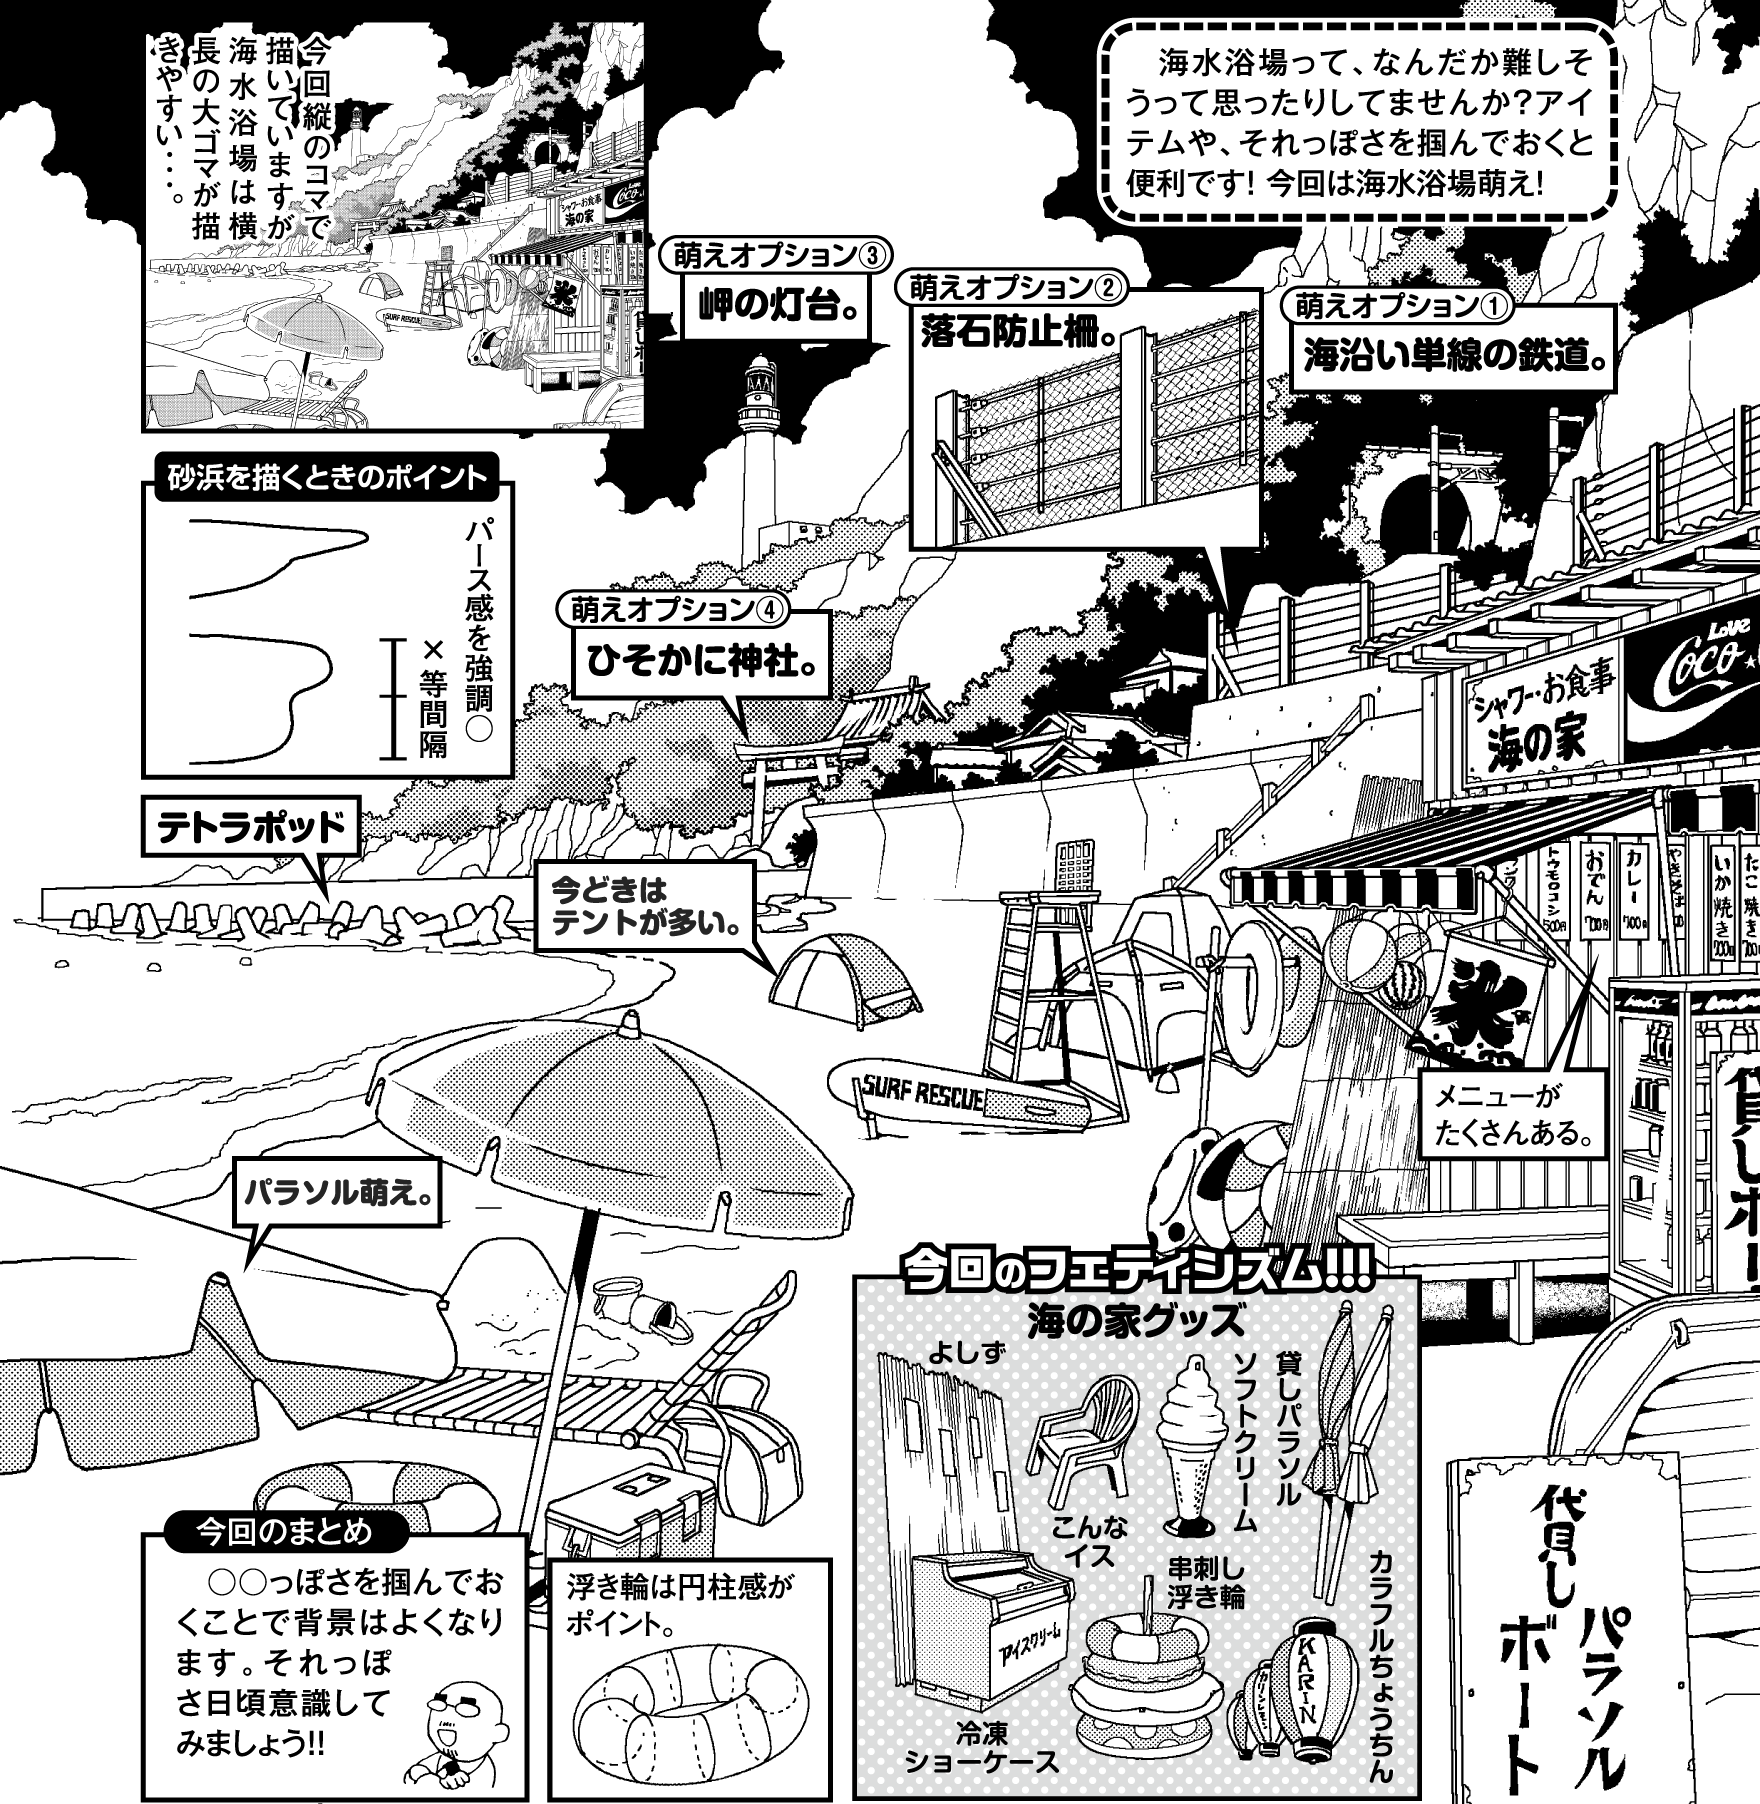 超級 背景講座 Maedaxの背景萌え 海水浴場編 イラスト マンガ描き方ナビ